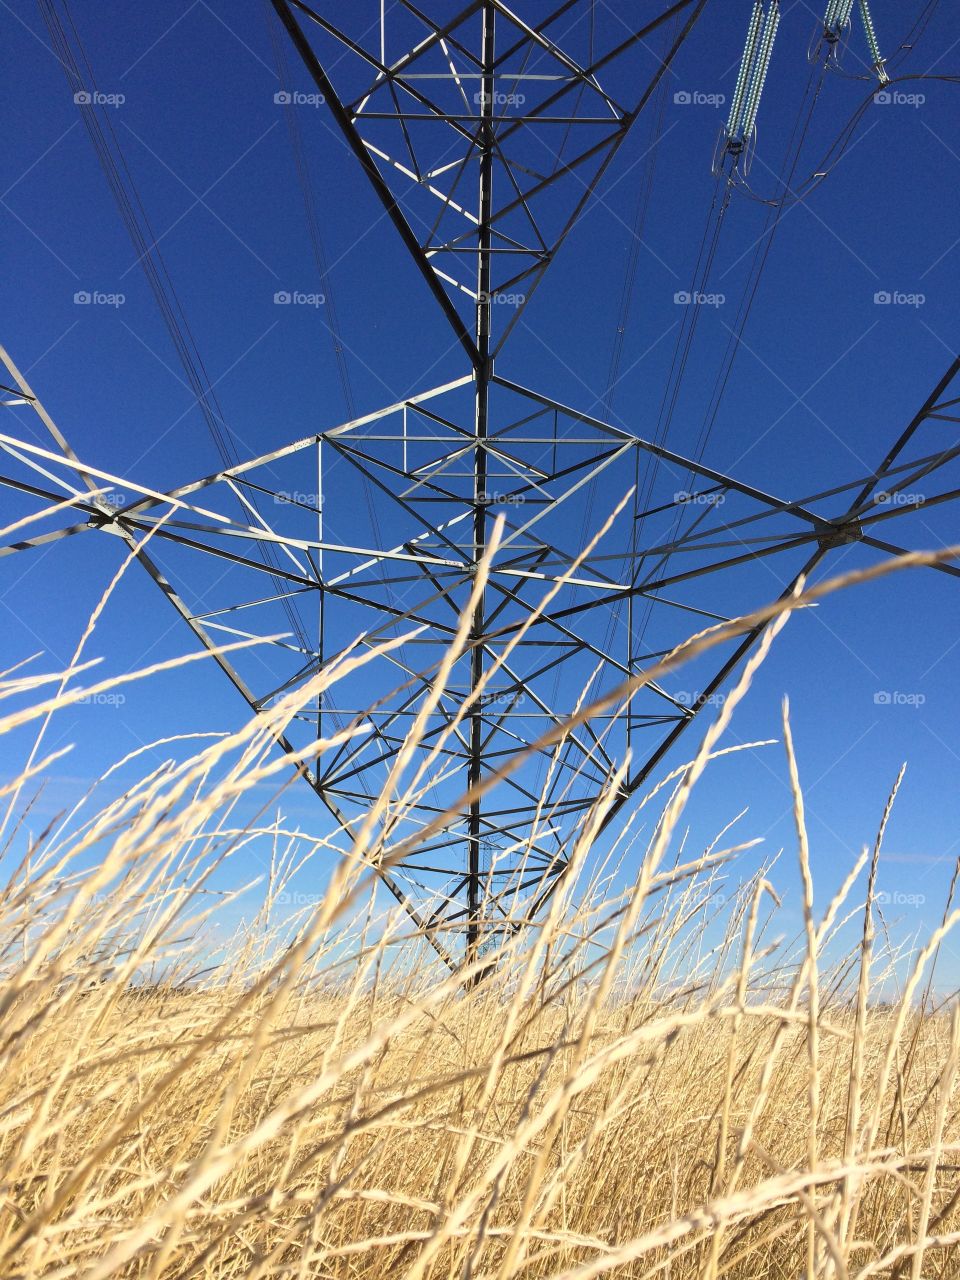 Base of a hydro tower seen through the prairie grass